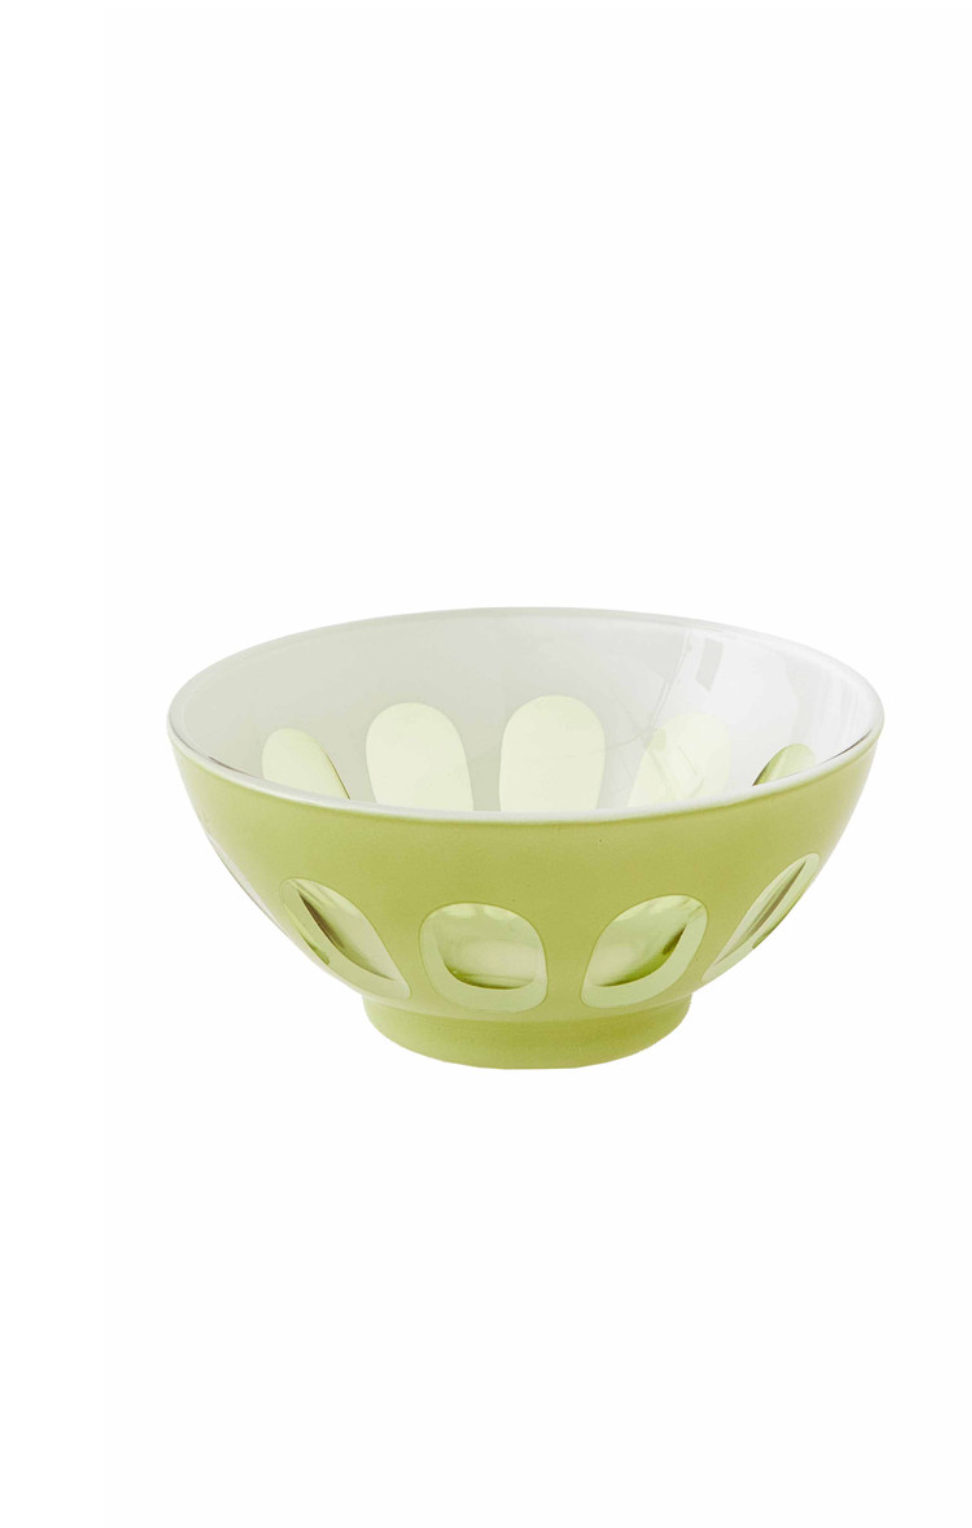 Rialto Glass Bowl in Pale Sage